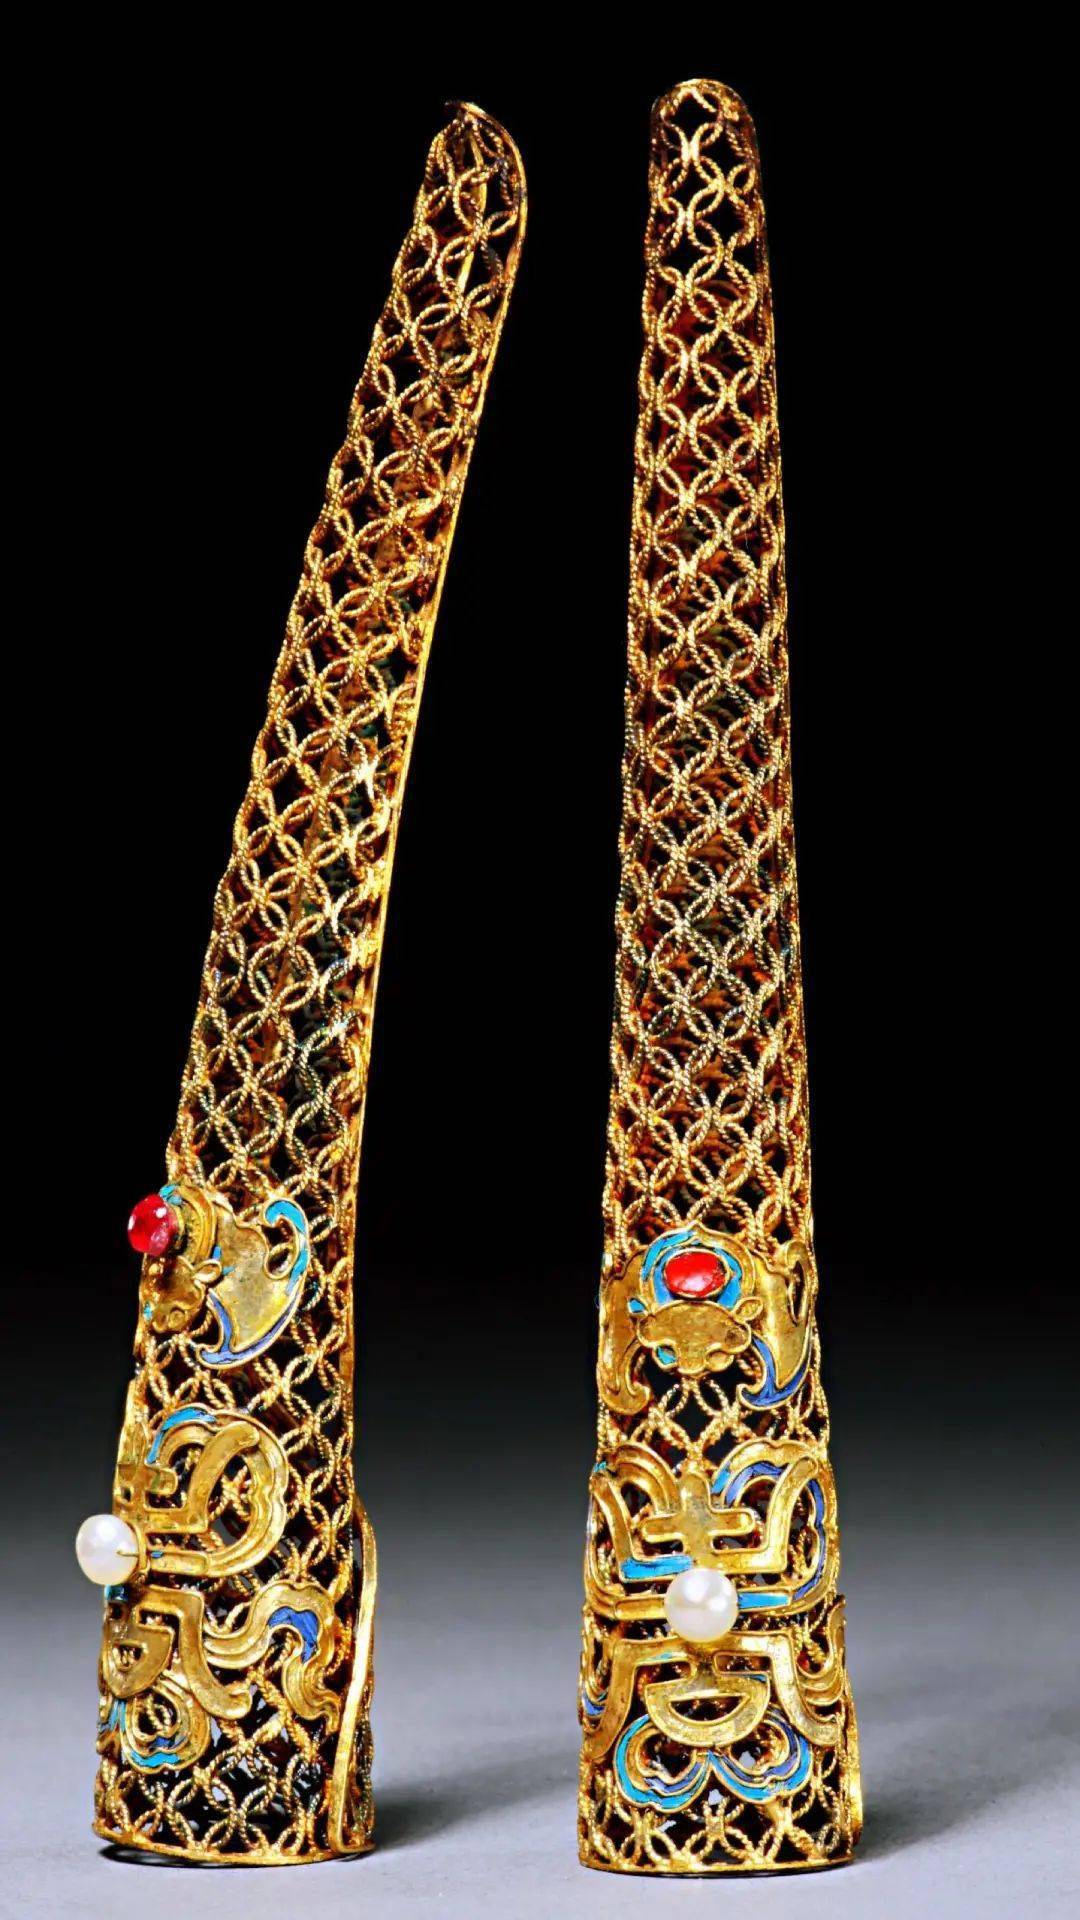 慈禧老佛爷最爱的"护甲套,原来是清朝贵妇身份的象征